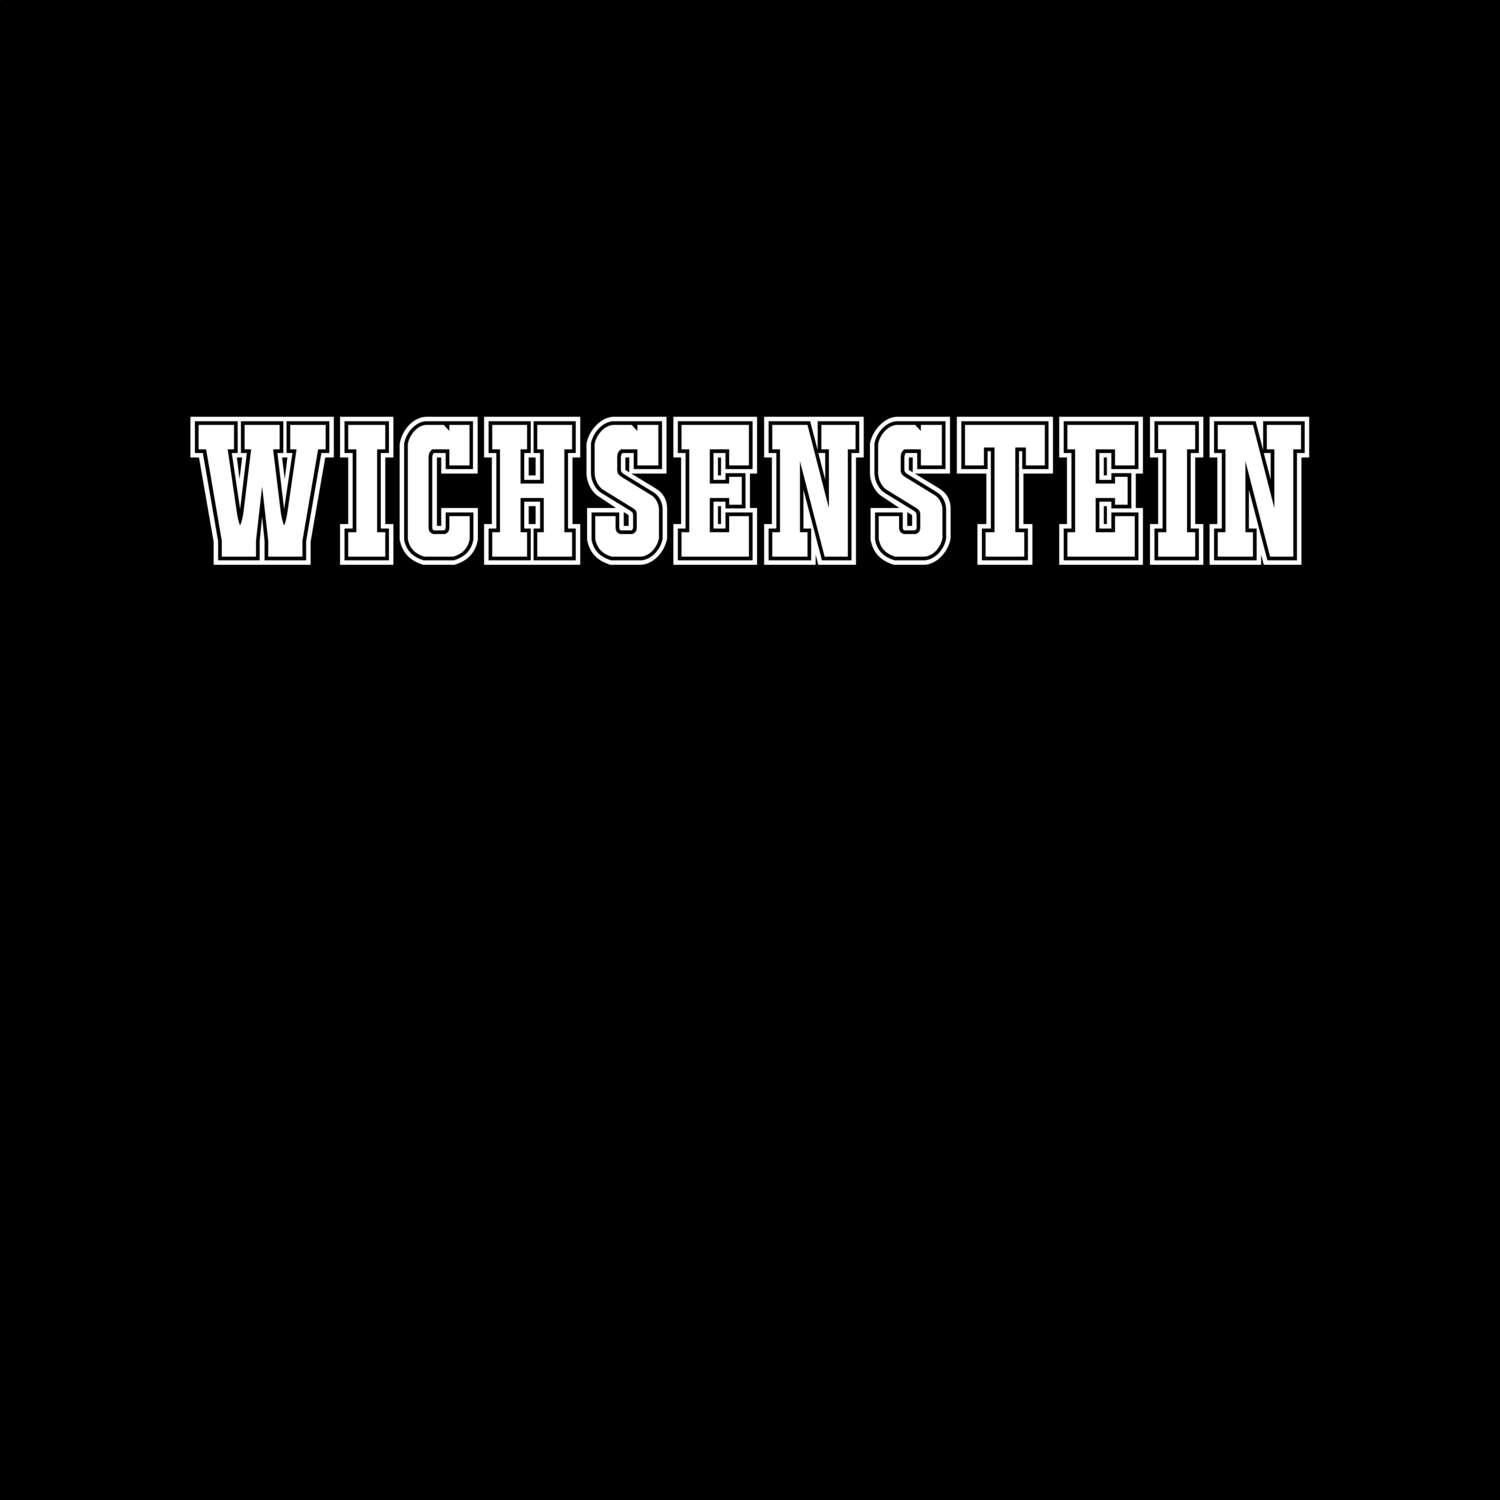 Wichsenstein T-Shirt »Classic«